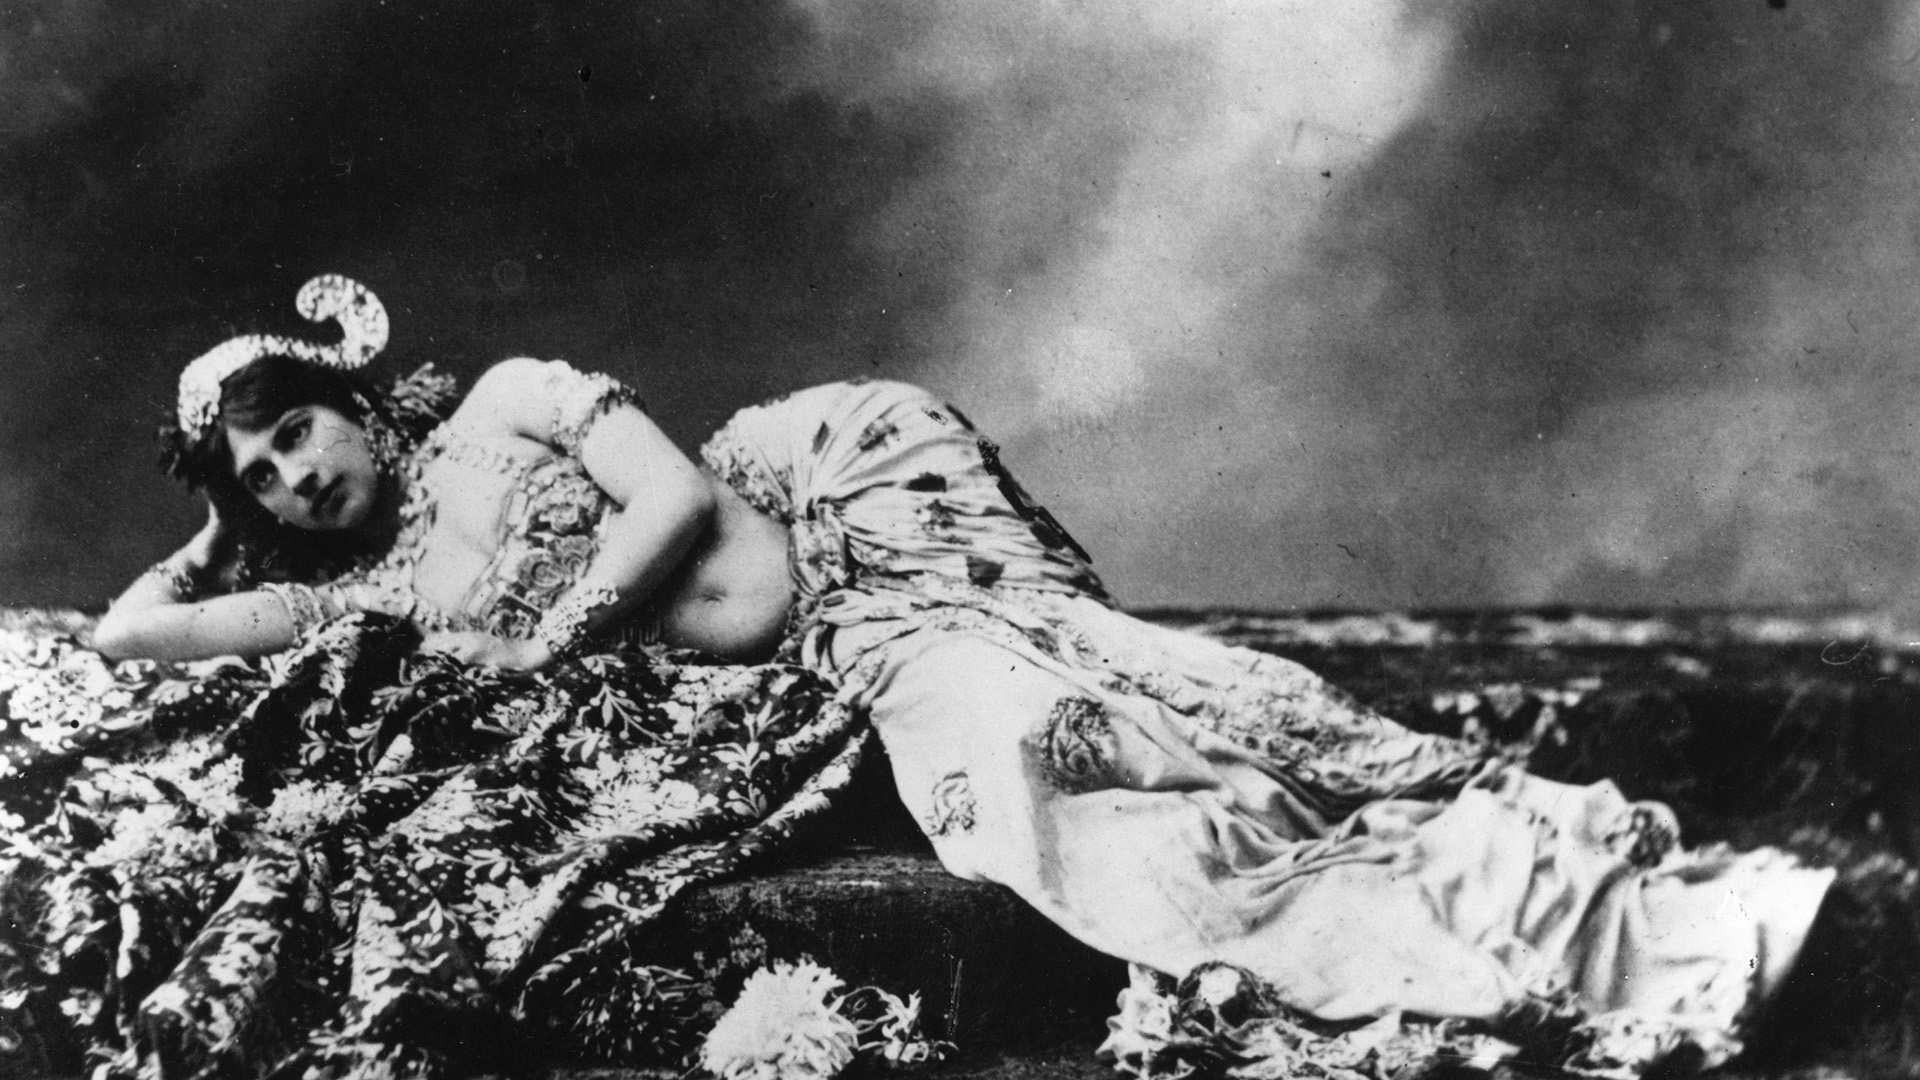 Los alemanes conocían la calidad de espía francesa de Mata Hari, y la inundaban de falsa información. Por eso, los ingleses comenzaron a desconfiar de ella. (Photo by Hulton Archive/Getty Images)